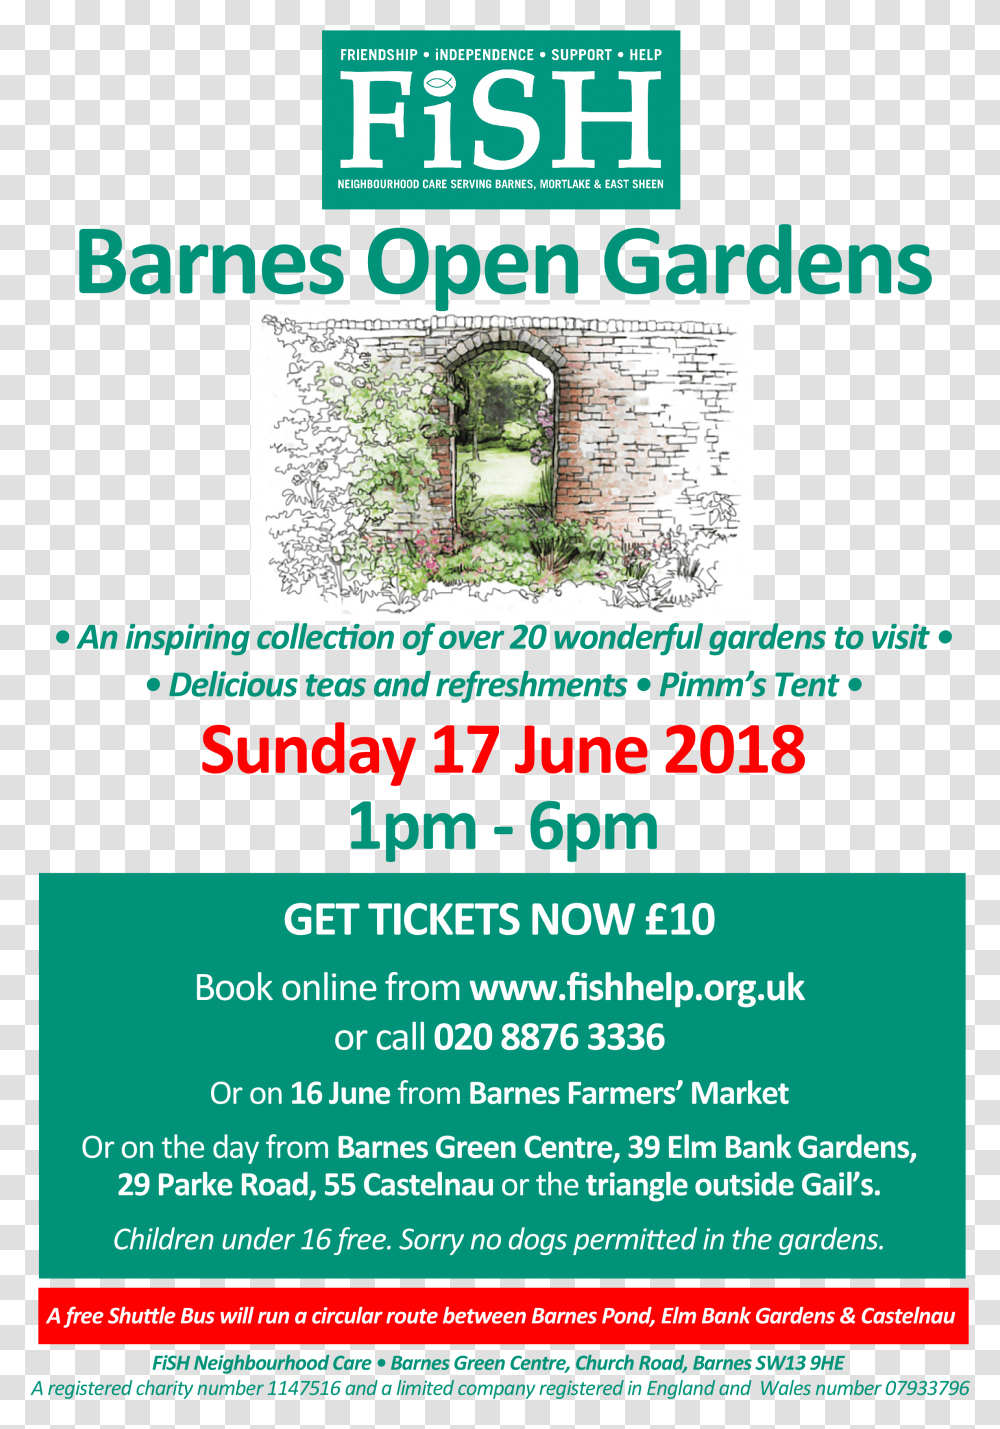 Barnes Open Gardens Buy Tickets Now Flyer, Poster, Paper, Advertisement, Brochure Transparent Png